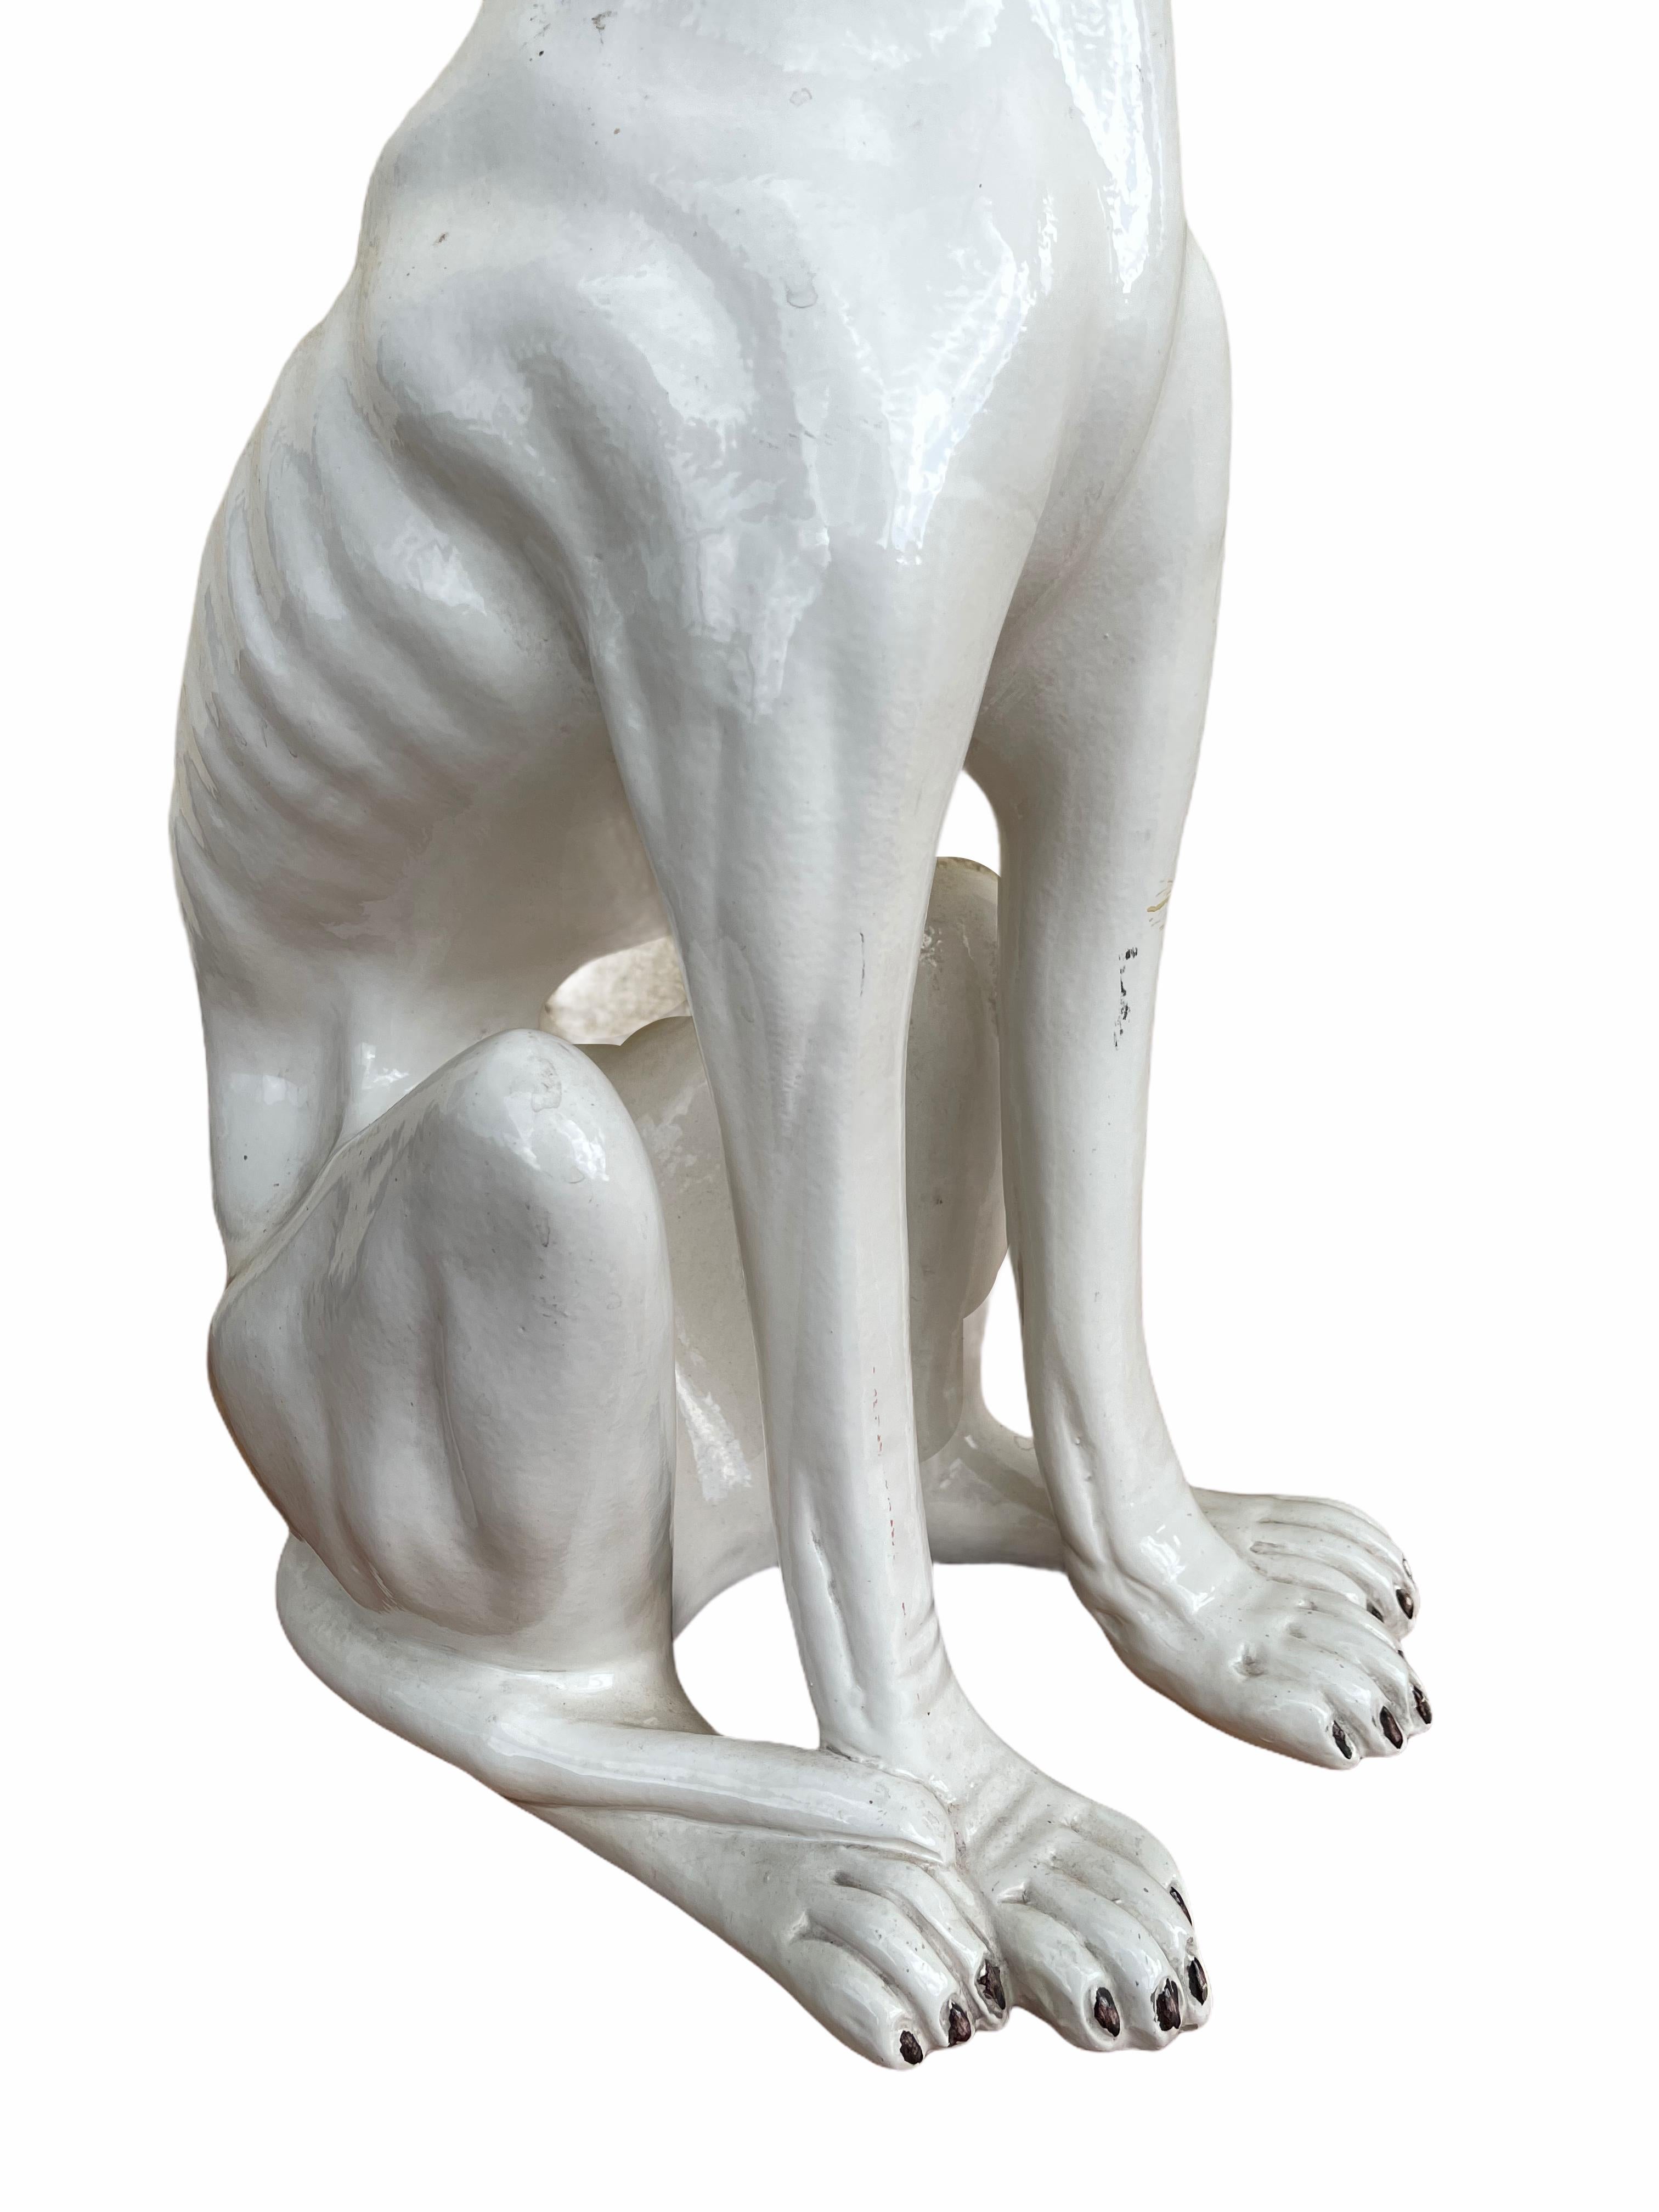 Statue de chien en majolique Whippet Greyhound italien grandeur nature Figurine Vintage, années 1930 2